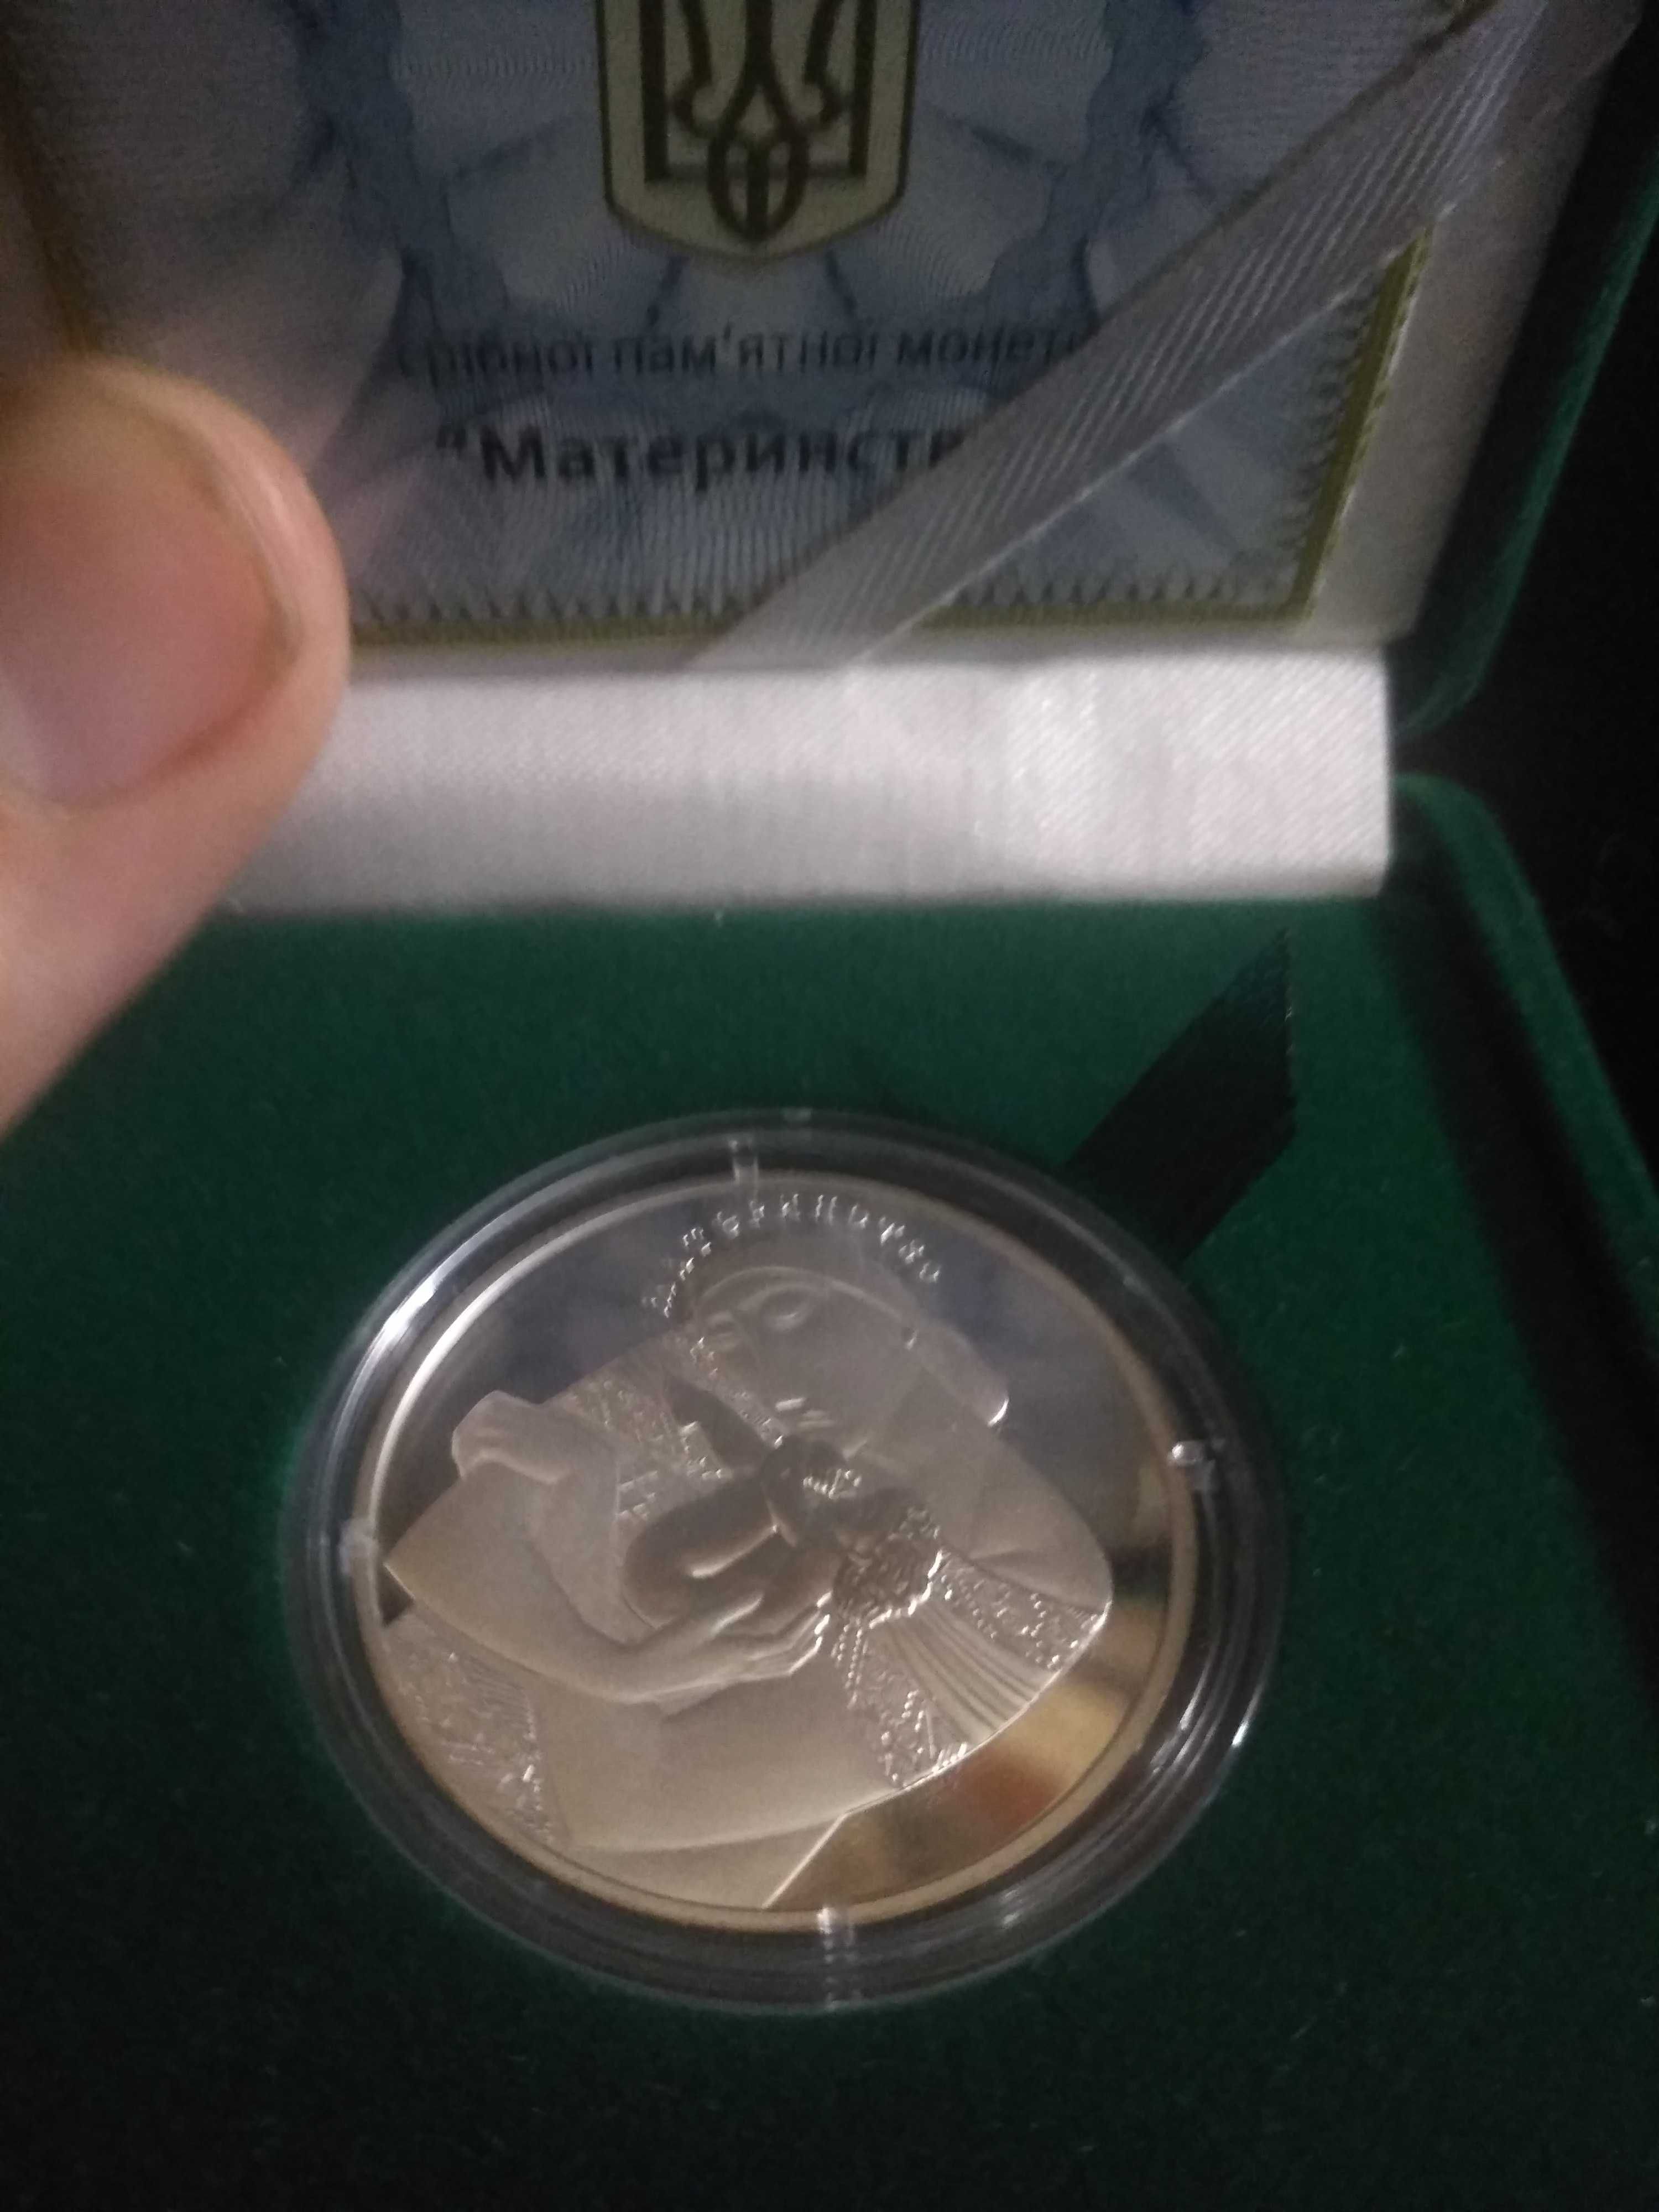 Серебренная монета Материнство 925.  На подарок.